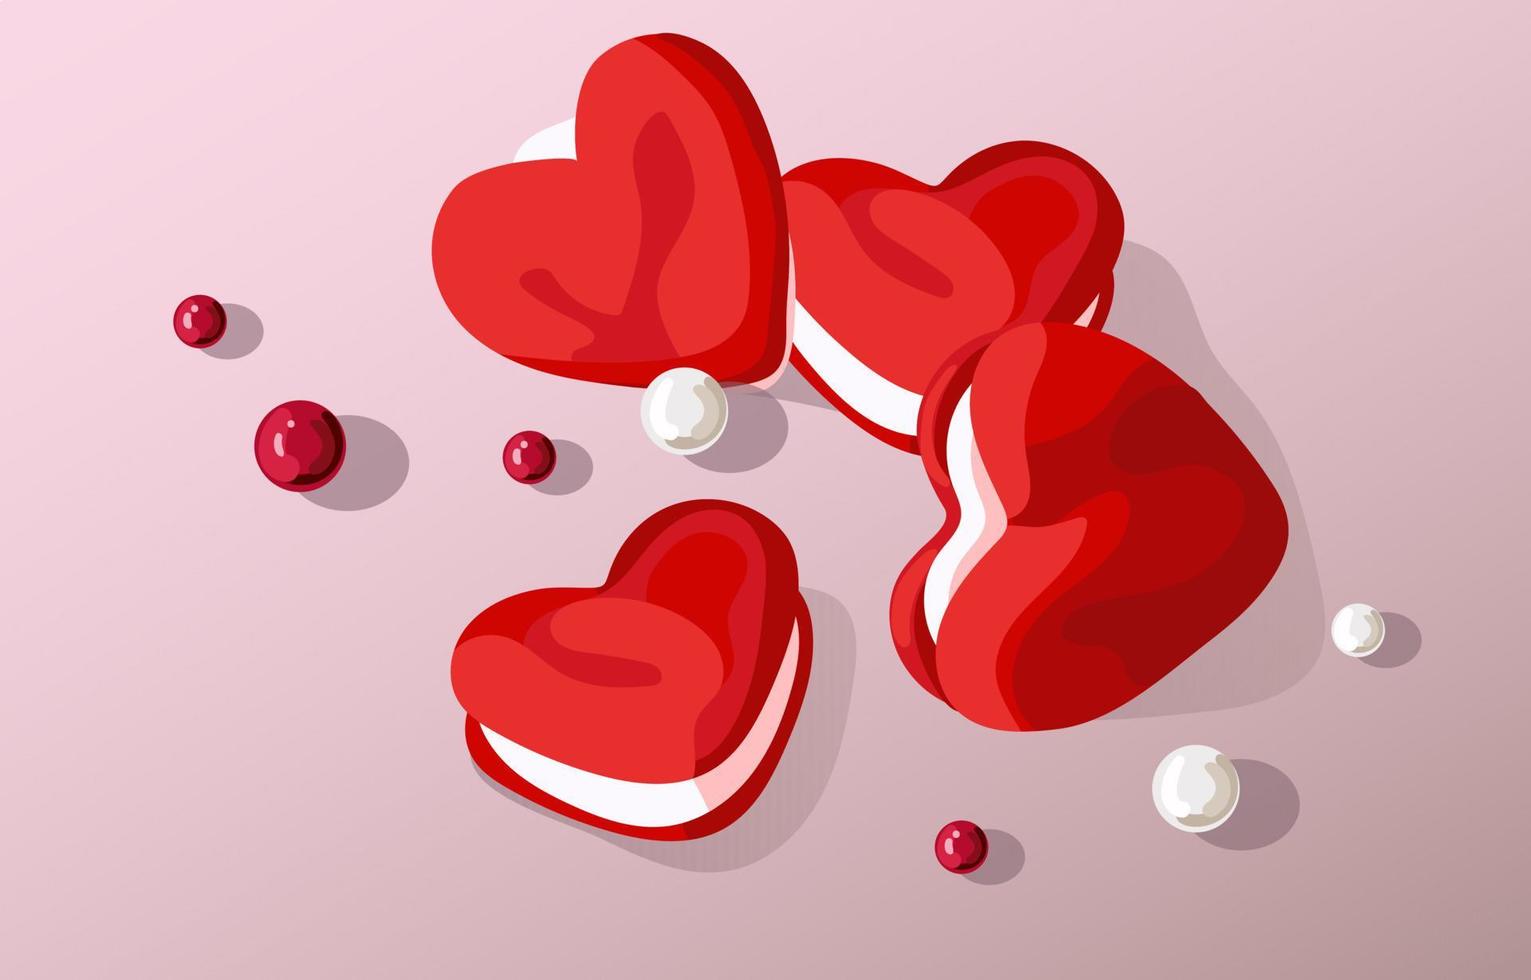 biscoitos em forma de coração para o dia dos namorados. biscoitos vermelhos com recheio branco em um fundo gradiente rosa com miçangas coloridas. adequado para imprimir cupons de desconto para as férias dos namorados. vetor